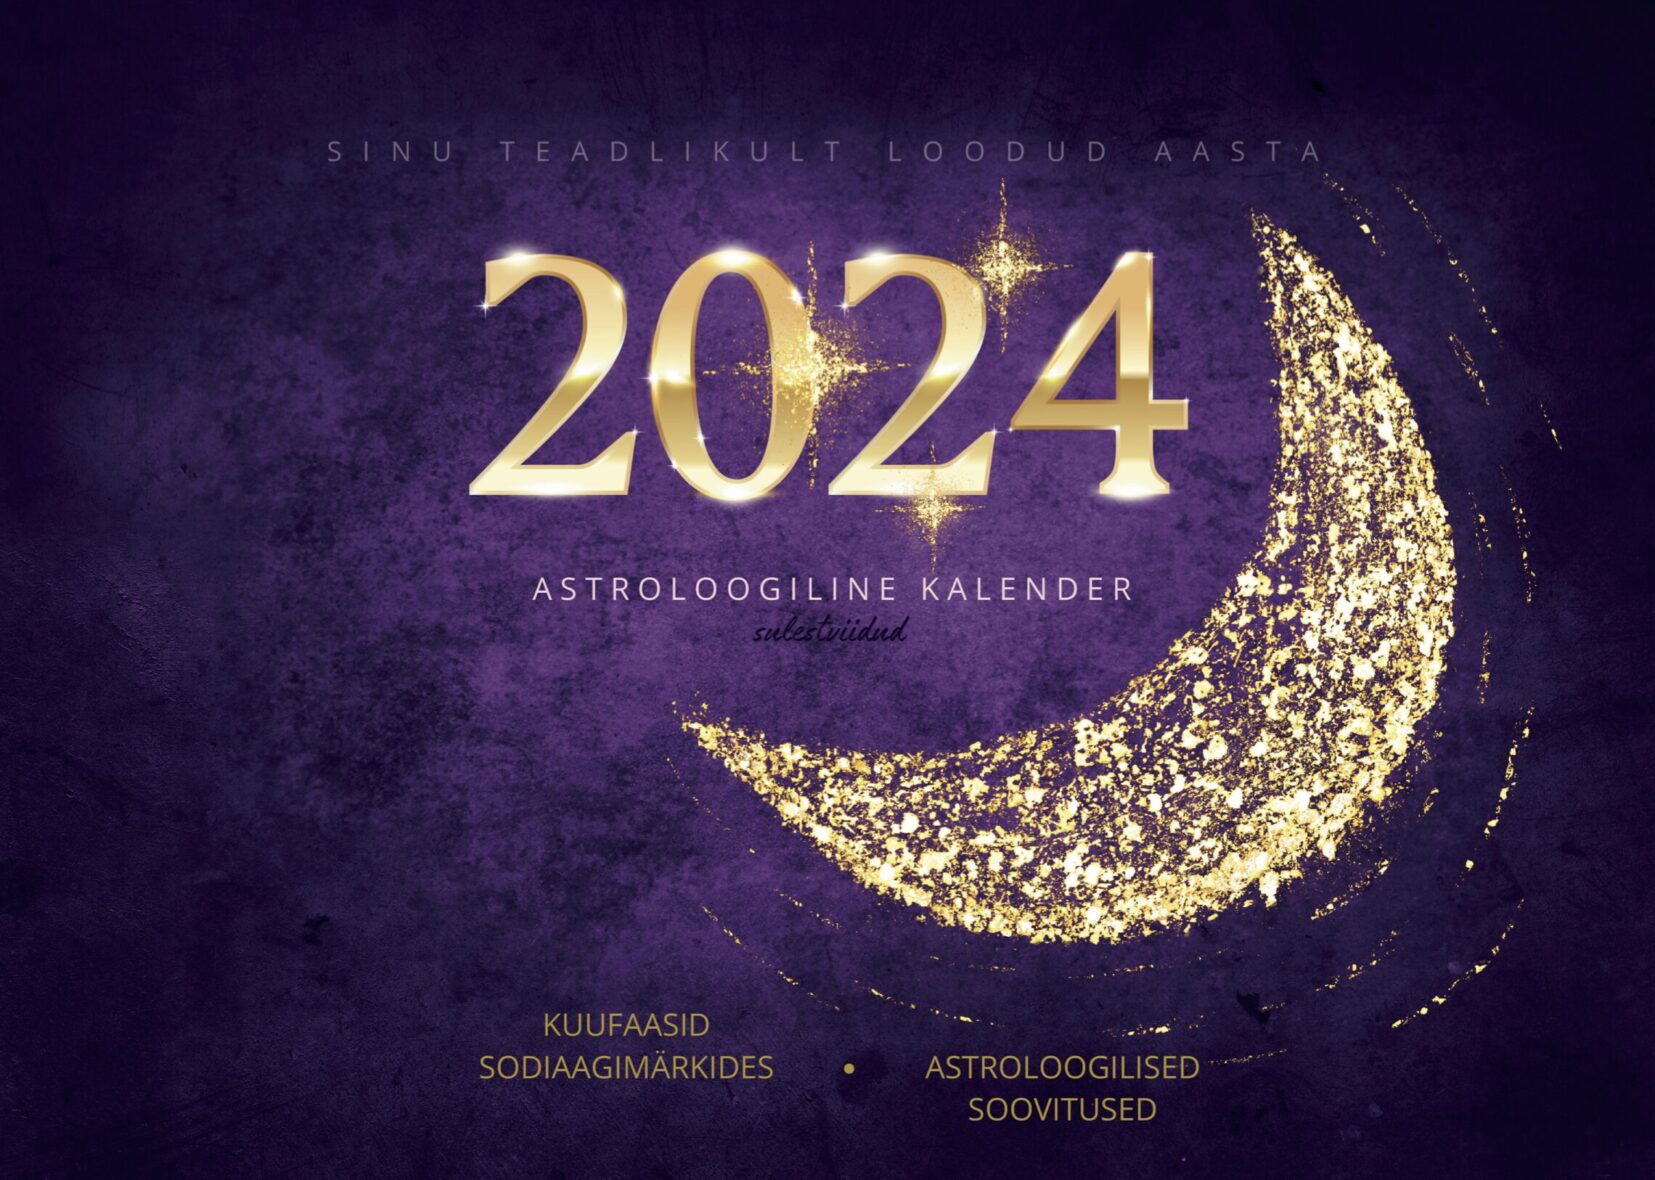 ASTROLOOGILINE KALENDER 2024